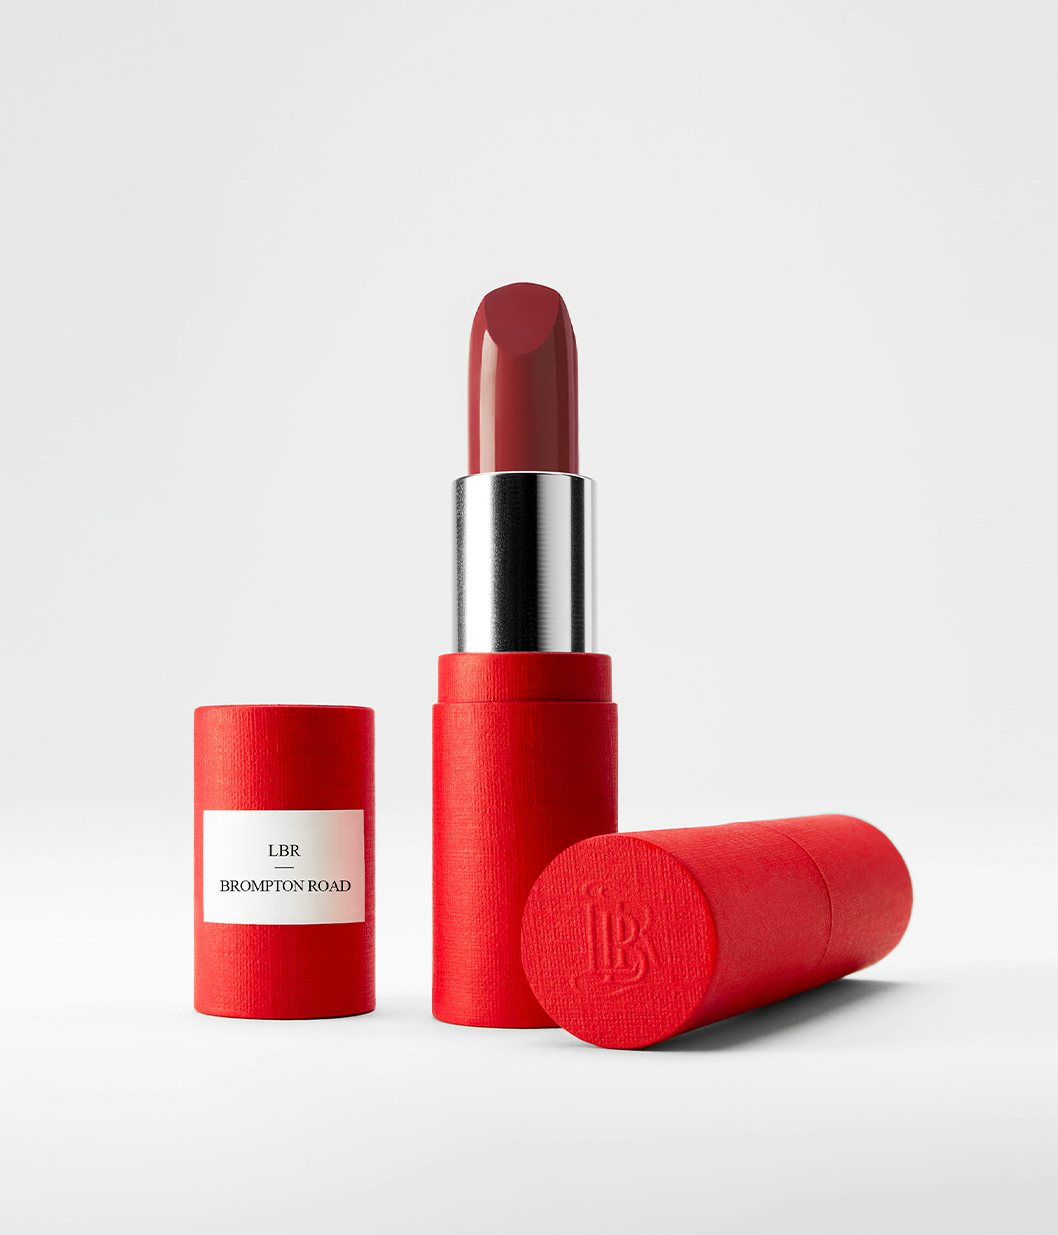 La bouche rouge Brompton Road lipstick in the red paper case